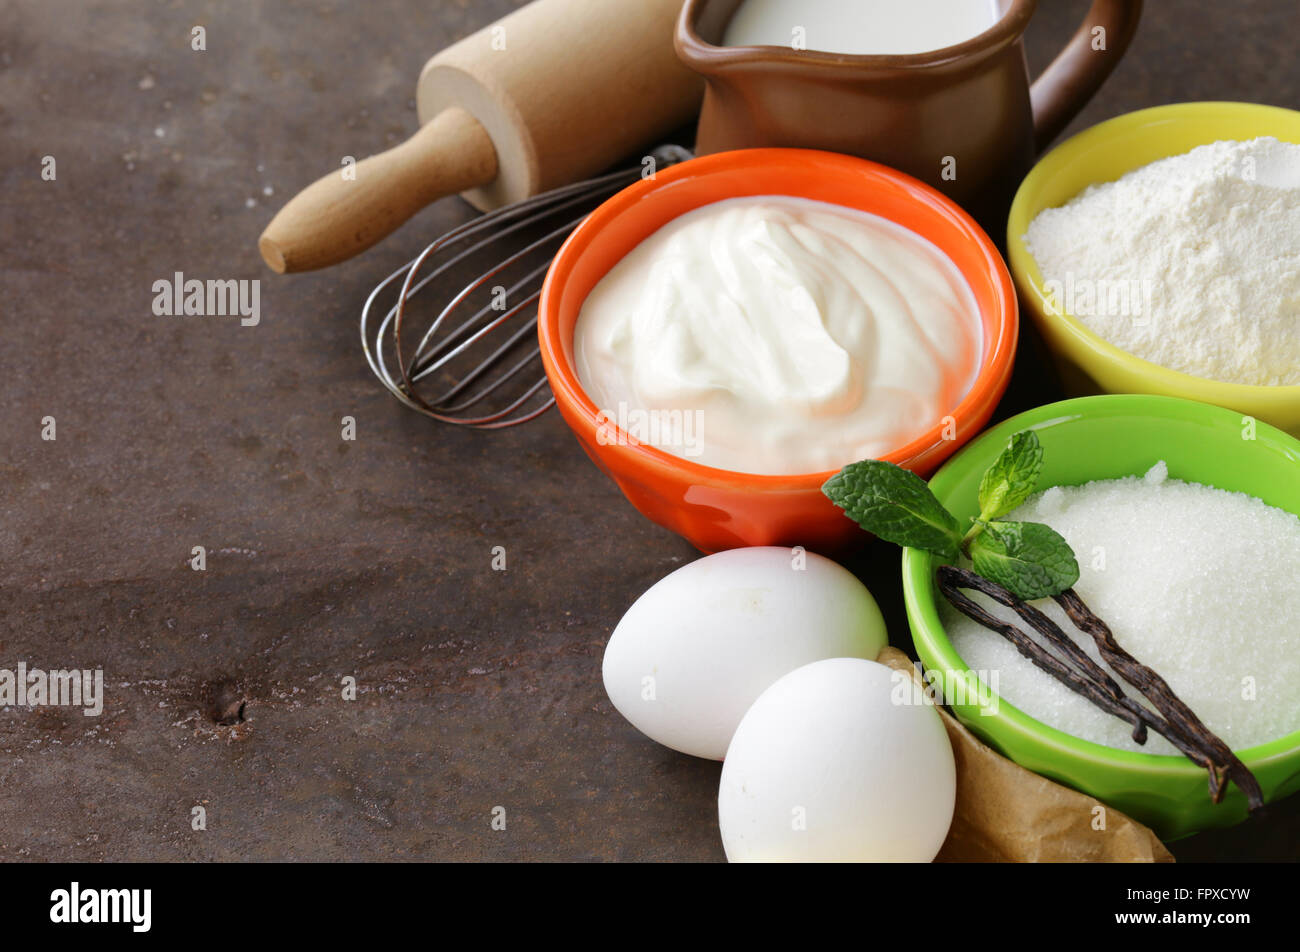 Ingrédients pour pâtisserie - beurre, lait, œufs, farine et sucre vanille sur un fond de bois Banque D'Images